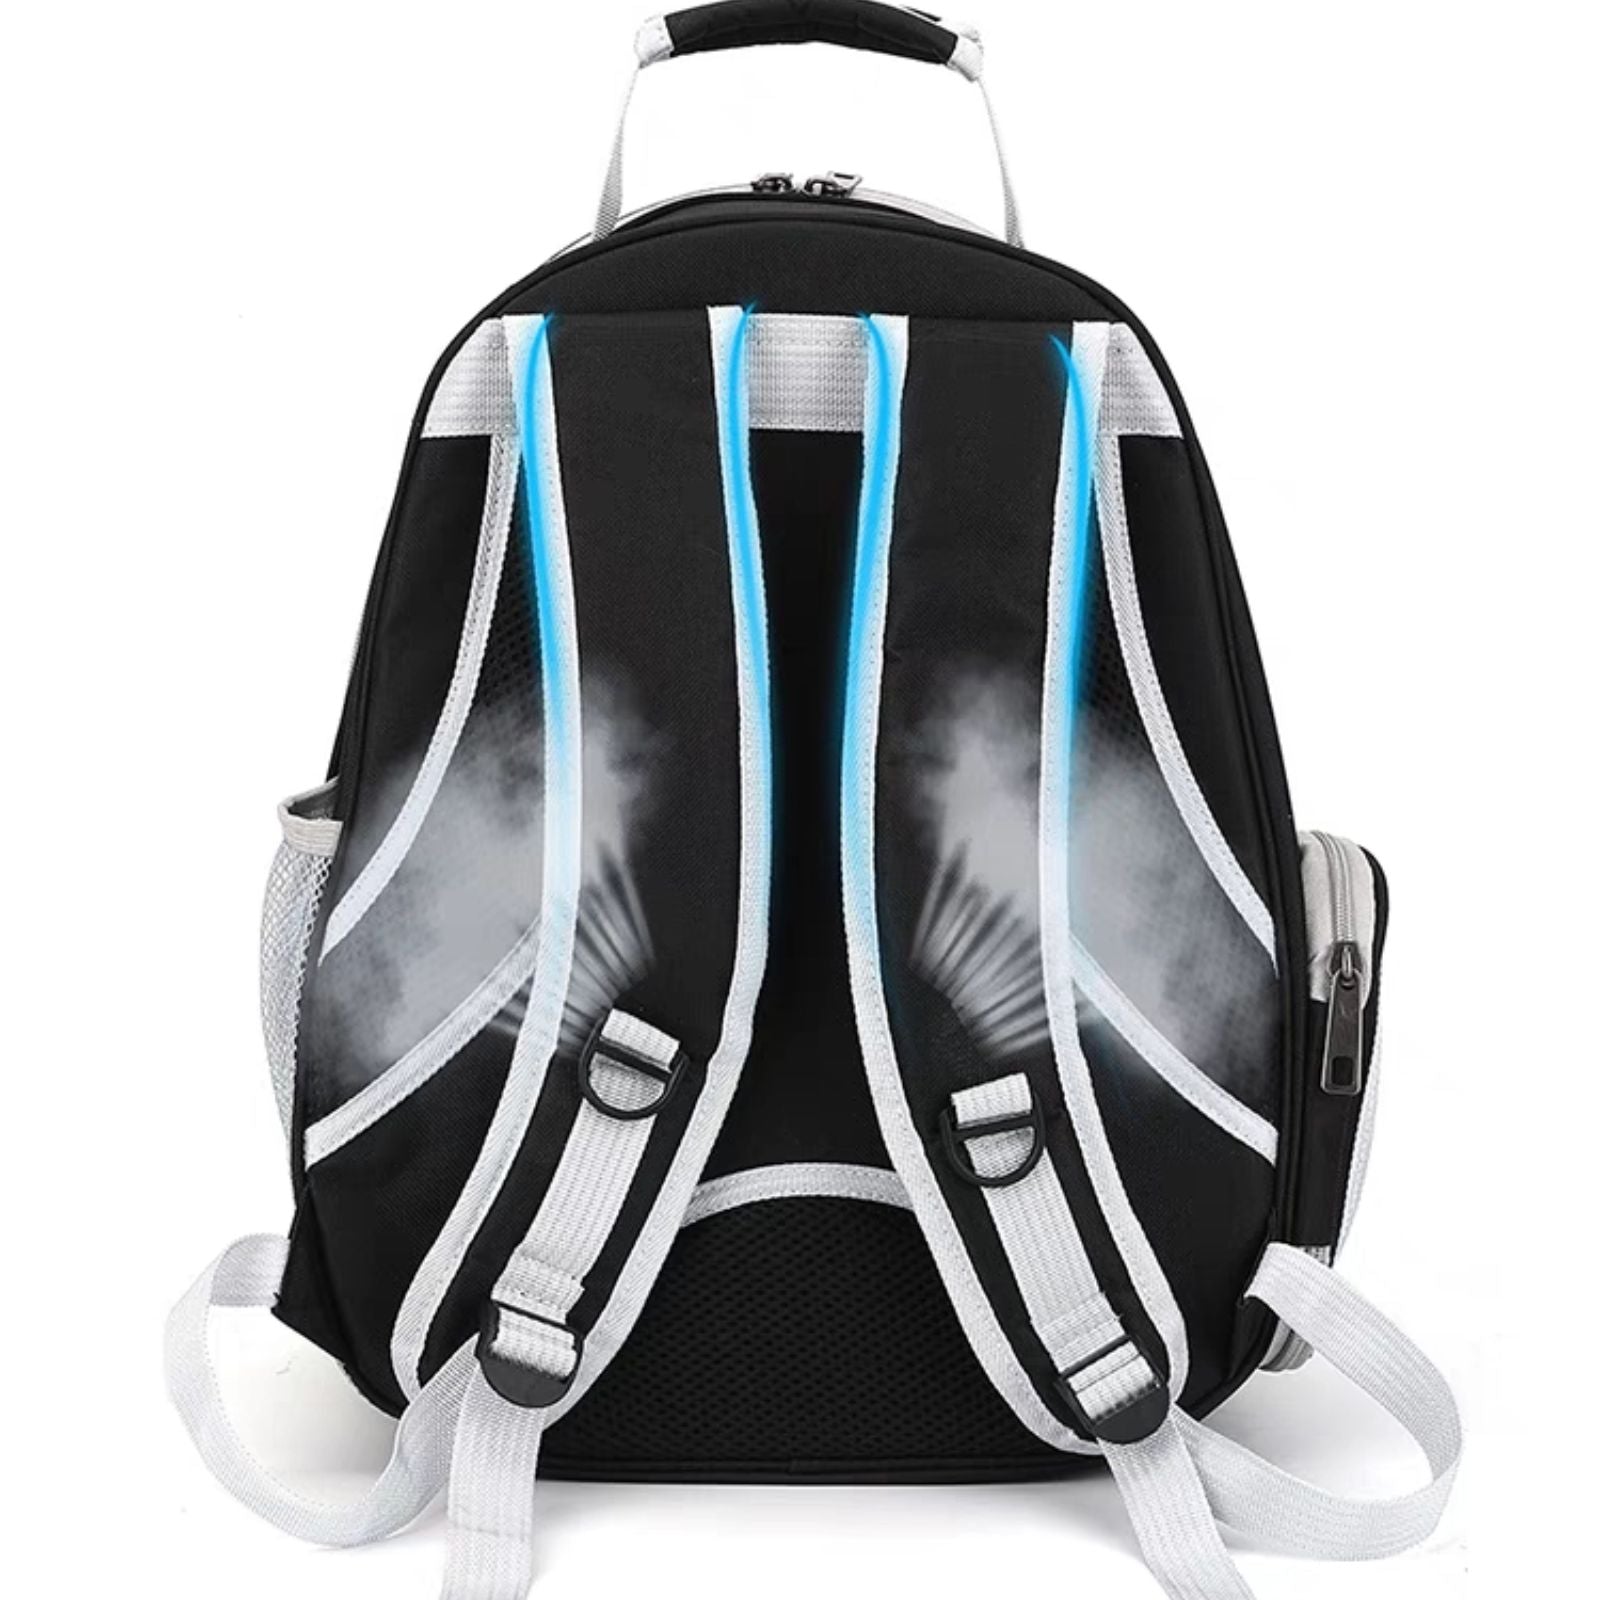 Floofi Space Capsule Backpack - Model 2 (Black)